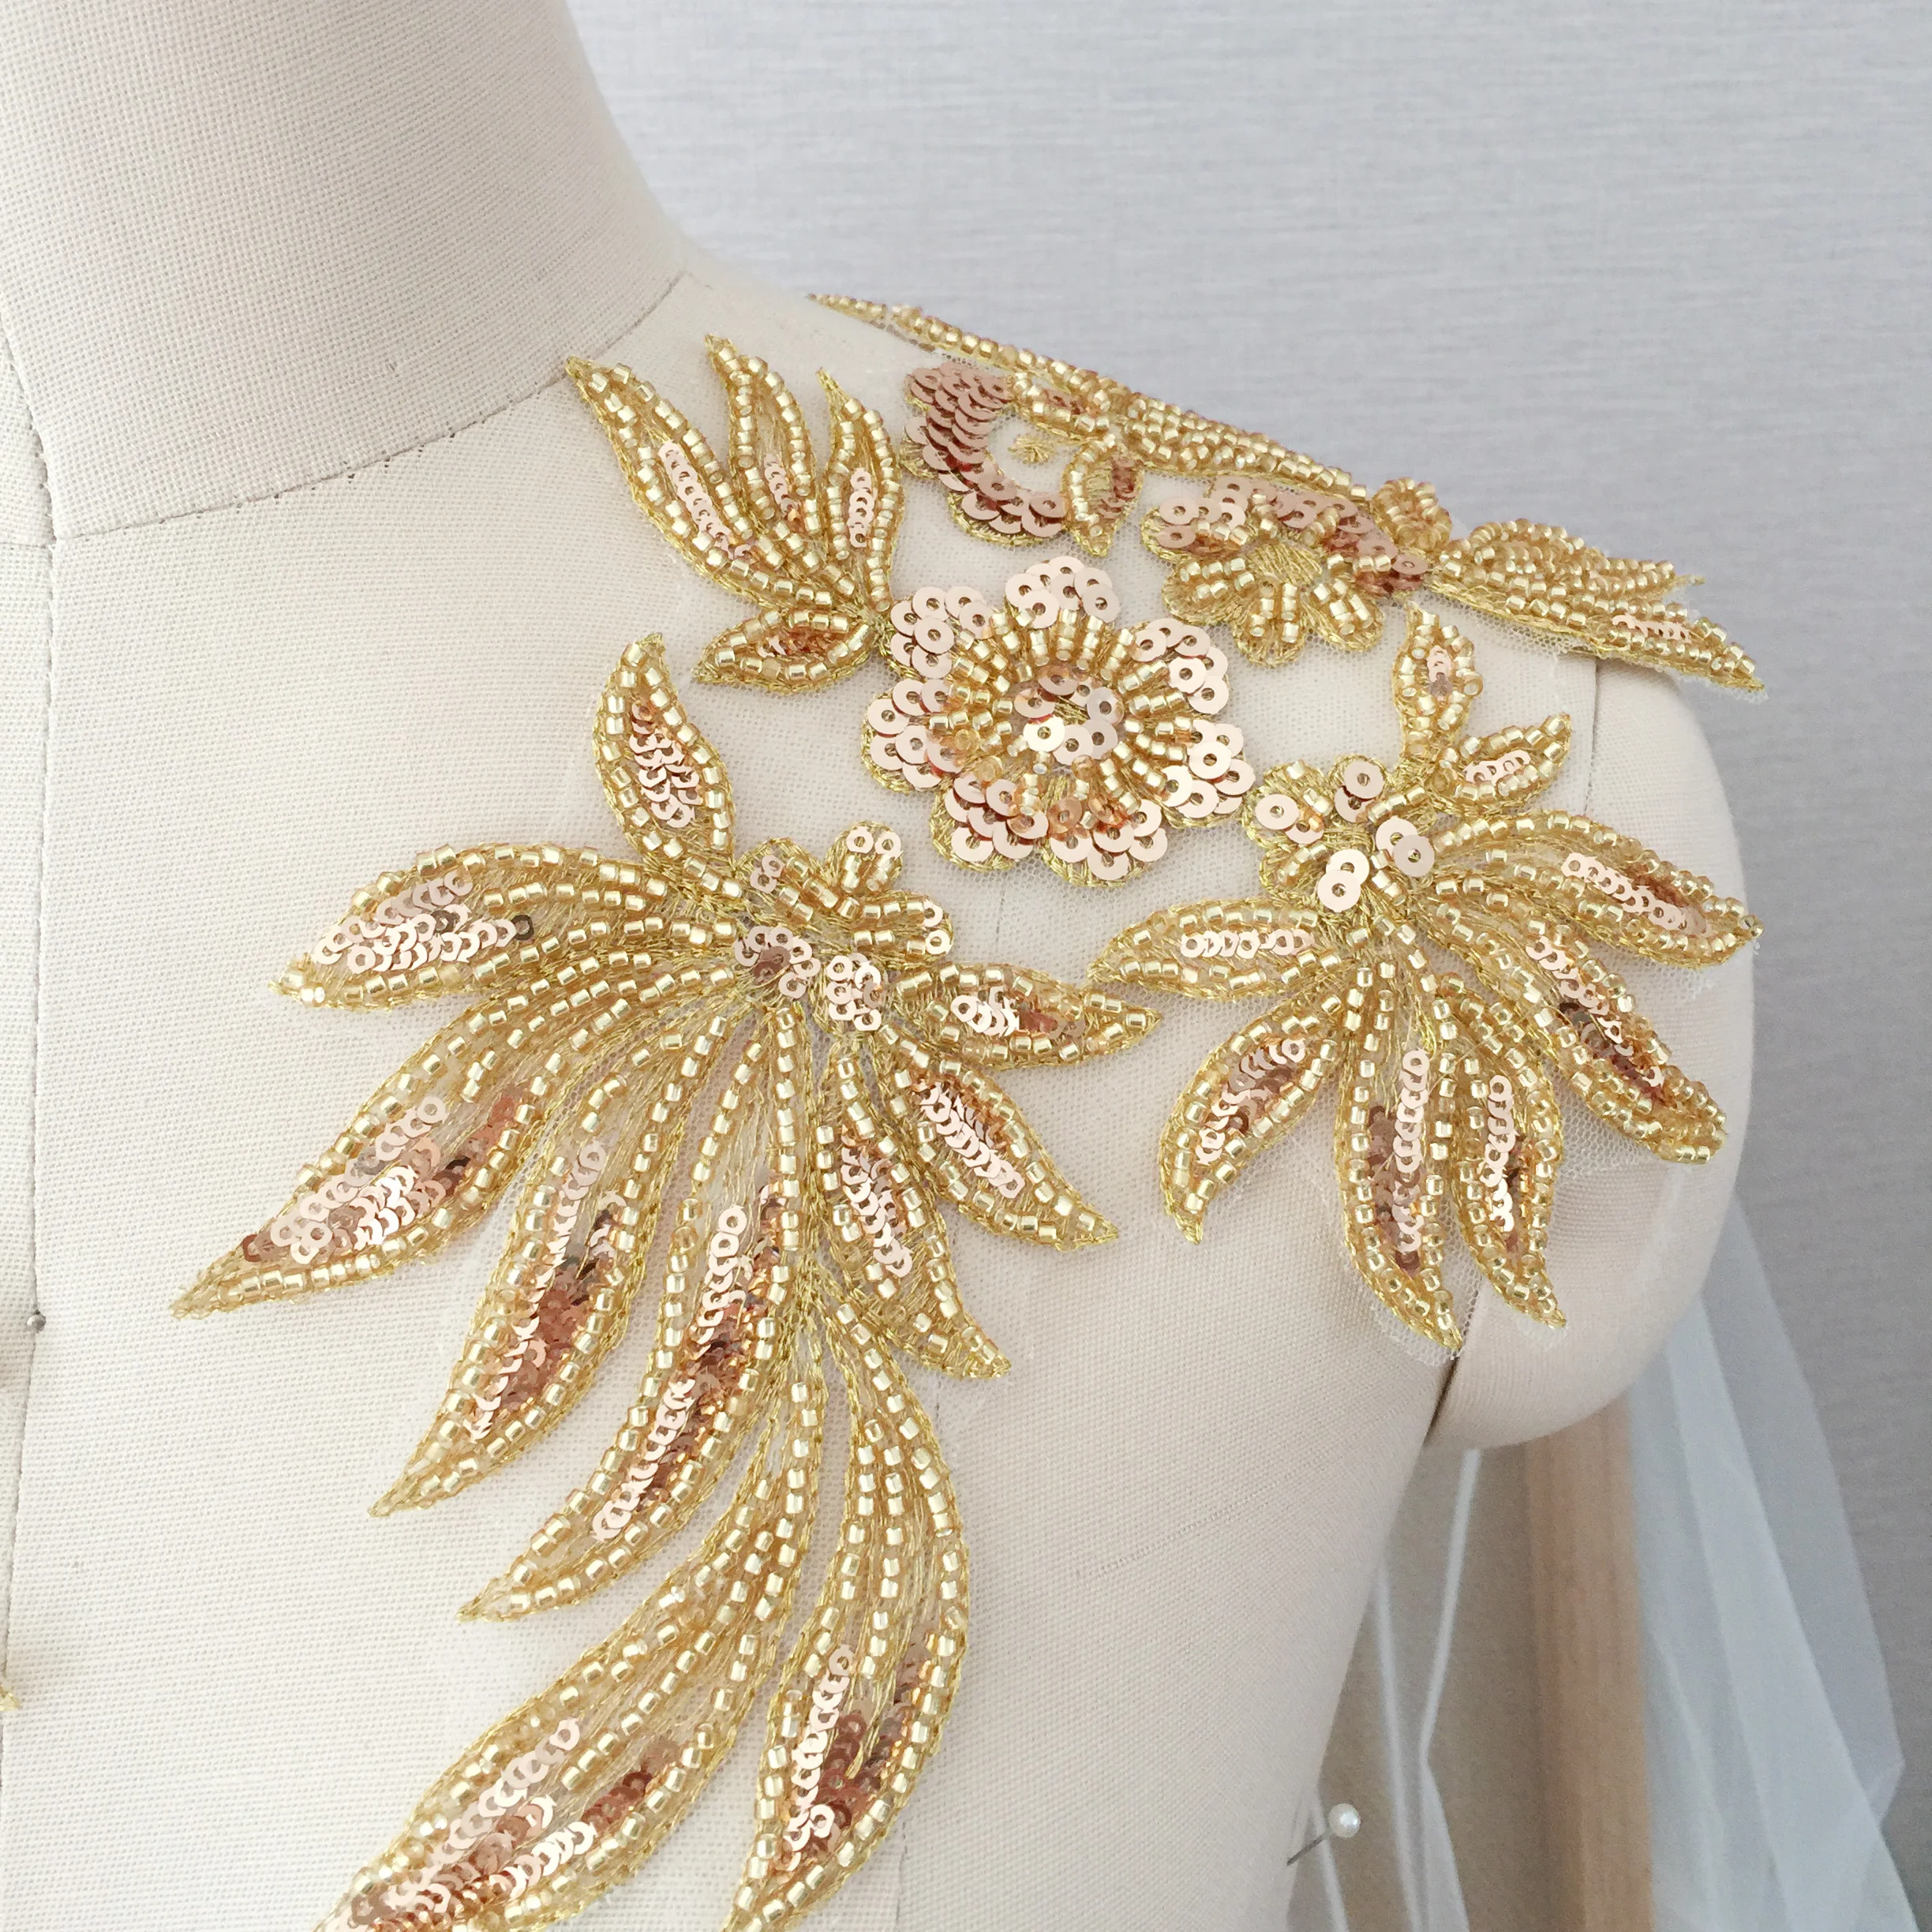 Apliques de encaje de lentejuelas florales 3D doradas, parche bordado de flores con lentejuelas, decoración delicada para disfraz de baile artesanal, 4 piezas